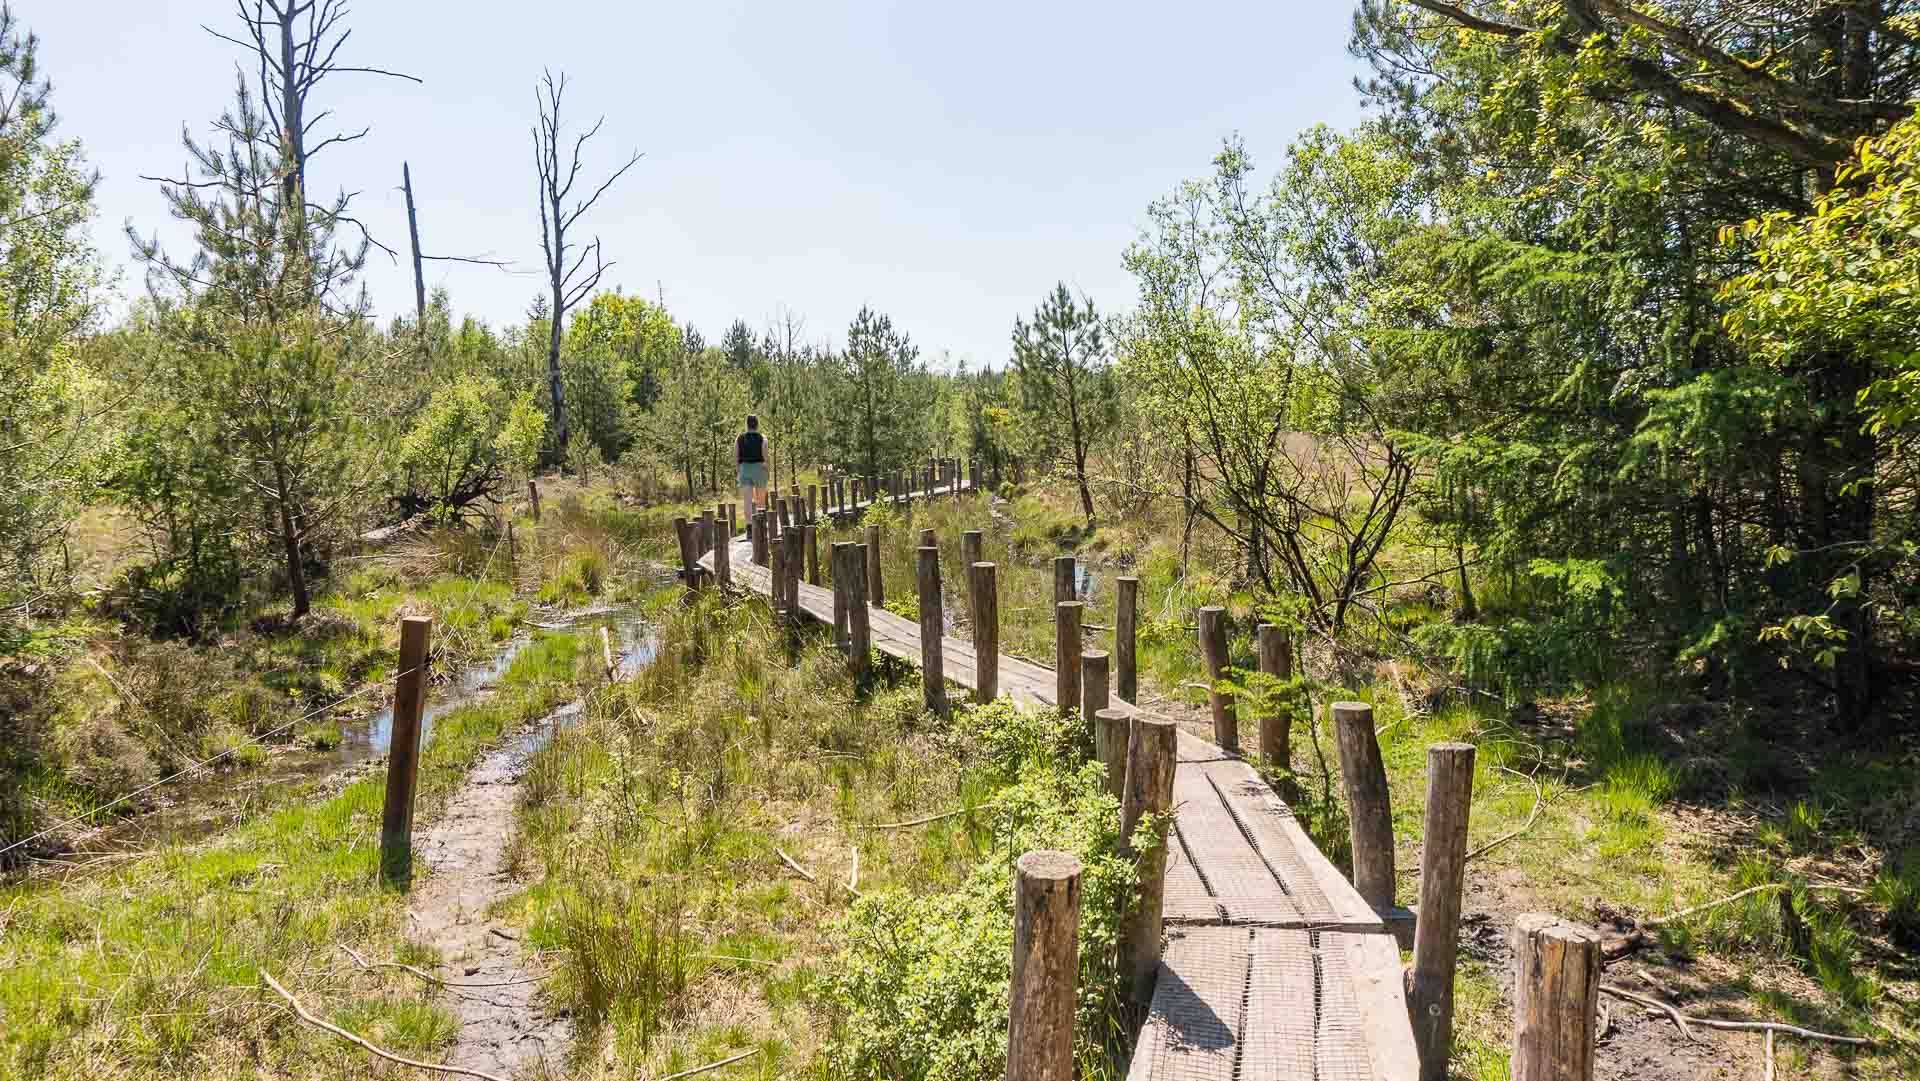 Wandelen over het plankenpad in Nationaal park Dwingelderveld